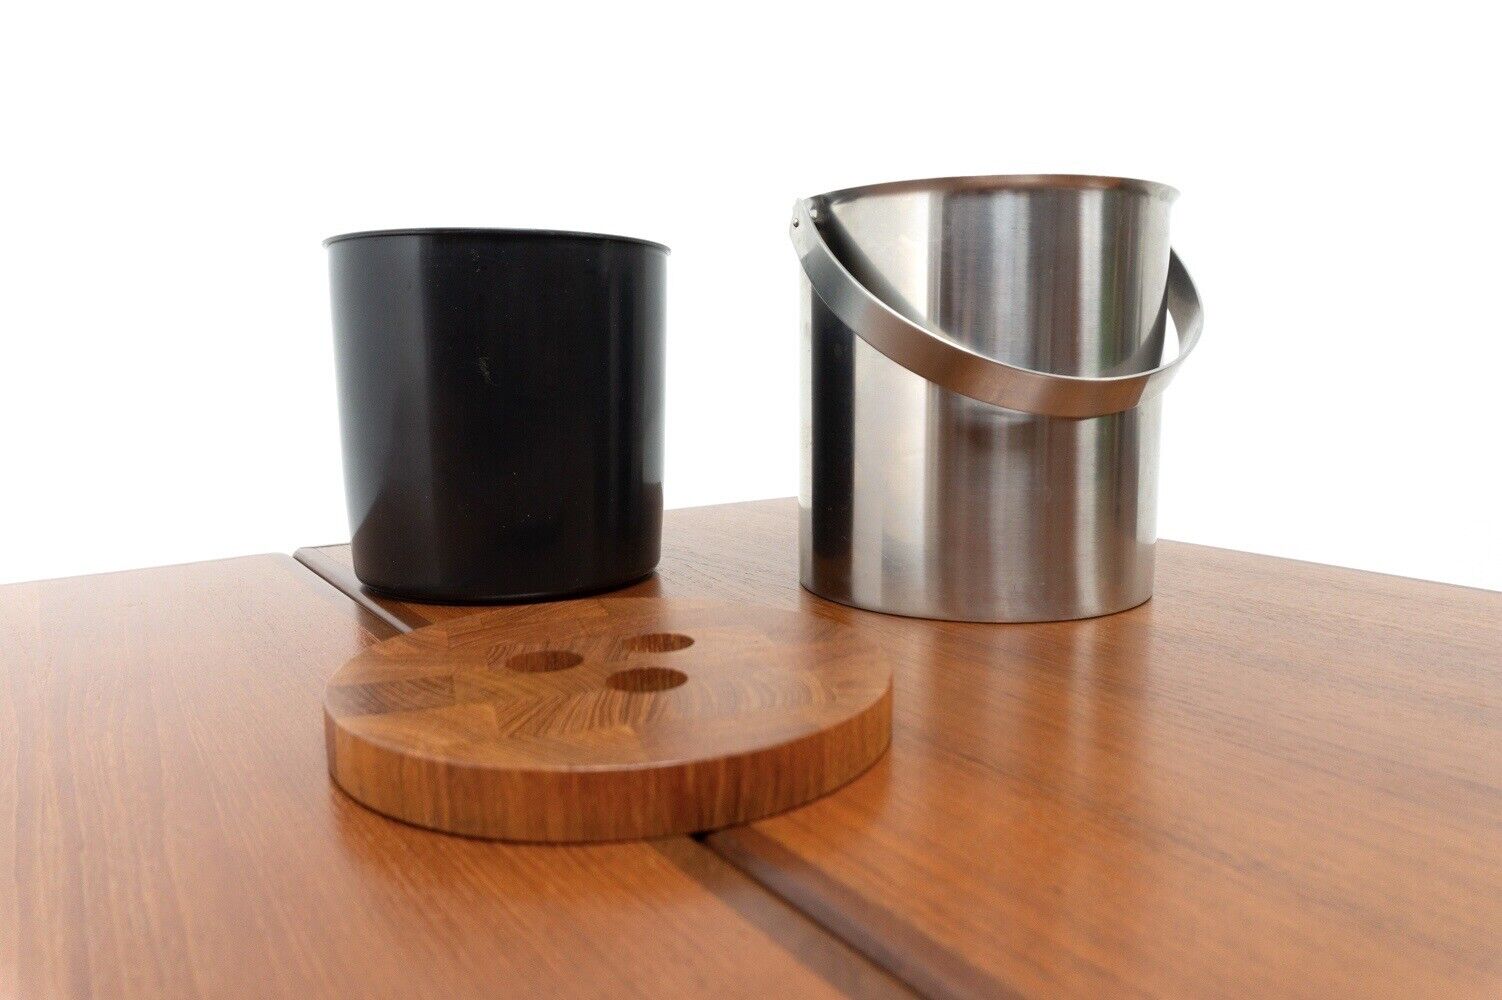 Vintage Danish Arne Jacobsen Teak Ice Bucket Stelton Stainless Steel /2014